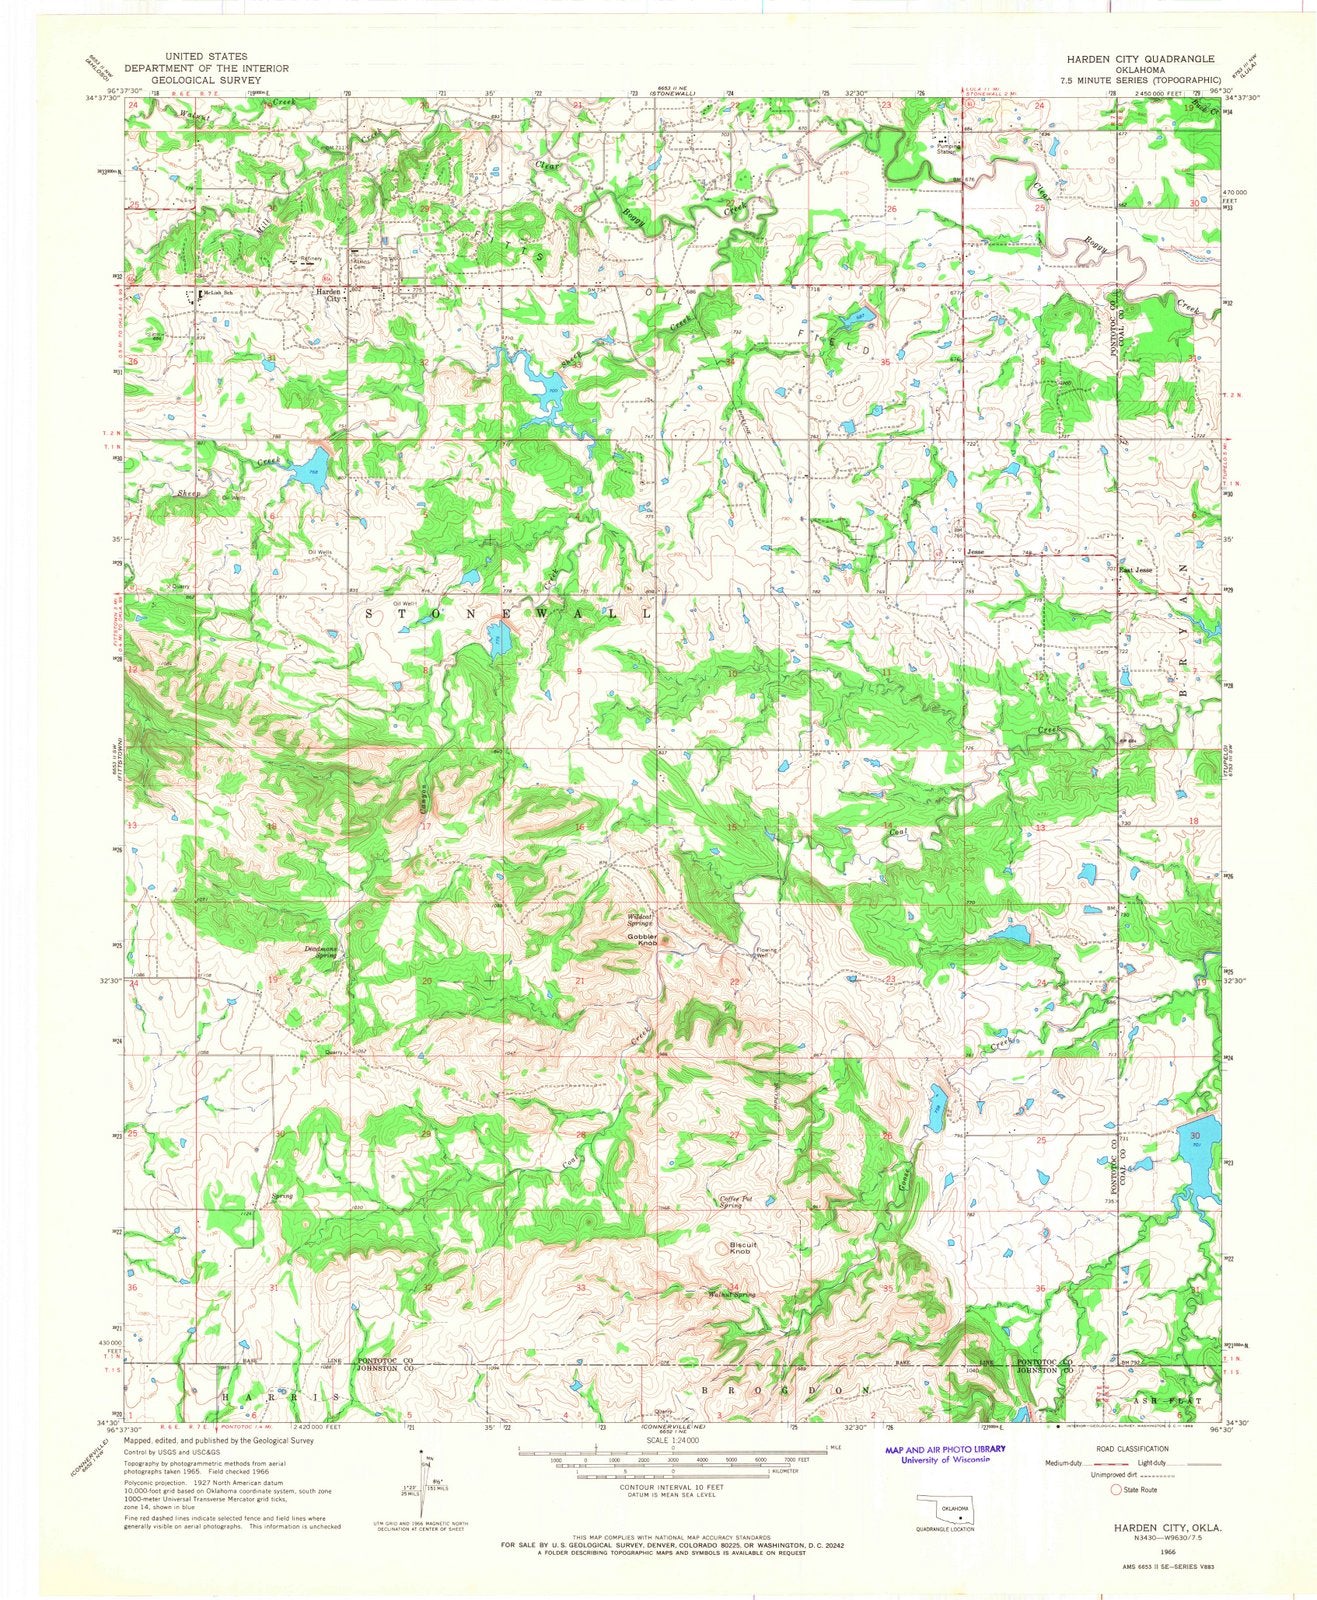 1966 Harden City, OK - Oklahoma - USGS Topographic Map